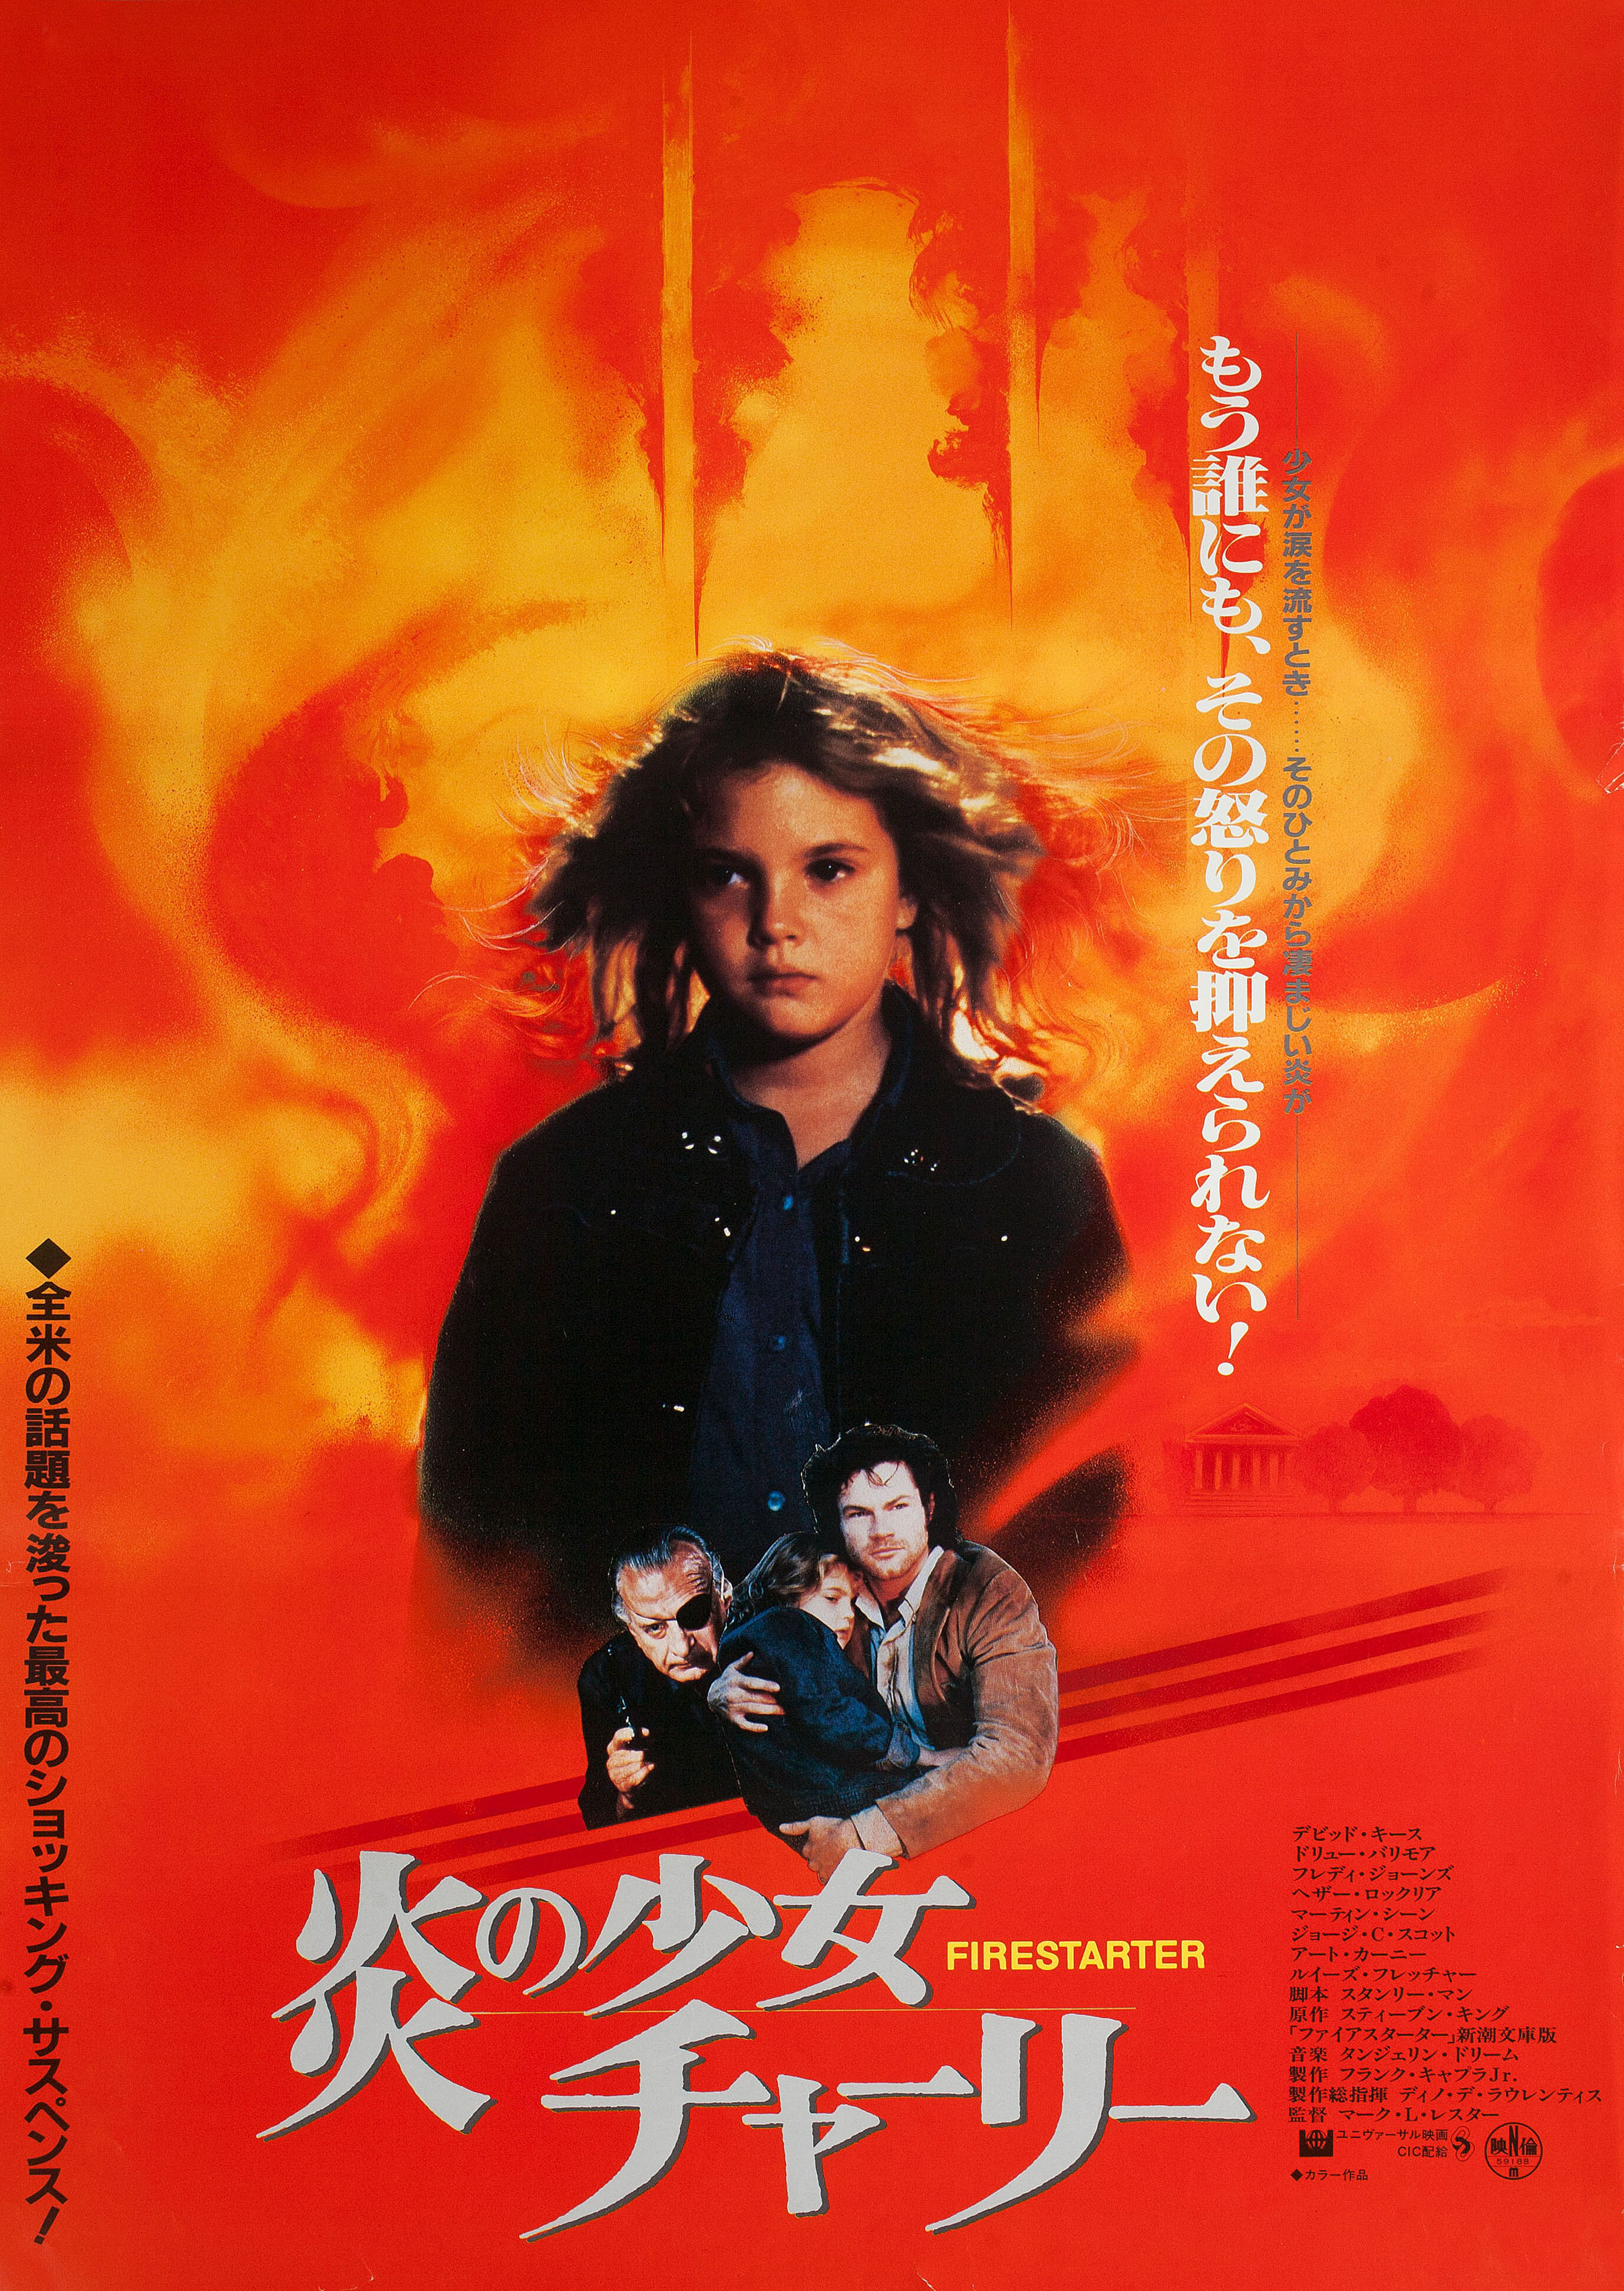 Порождающая огонь (Firestarter, 1984), режиссёр Марк Л. Лестер, японский постер к фильму (ужасы, 1984 год)